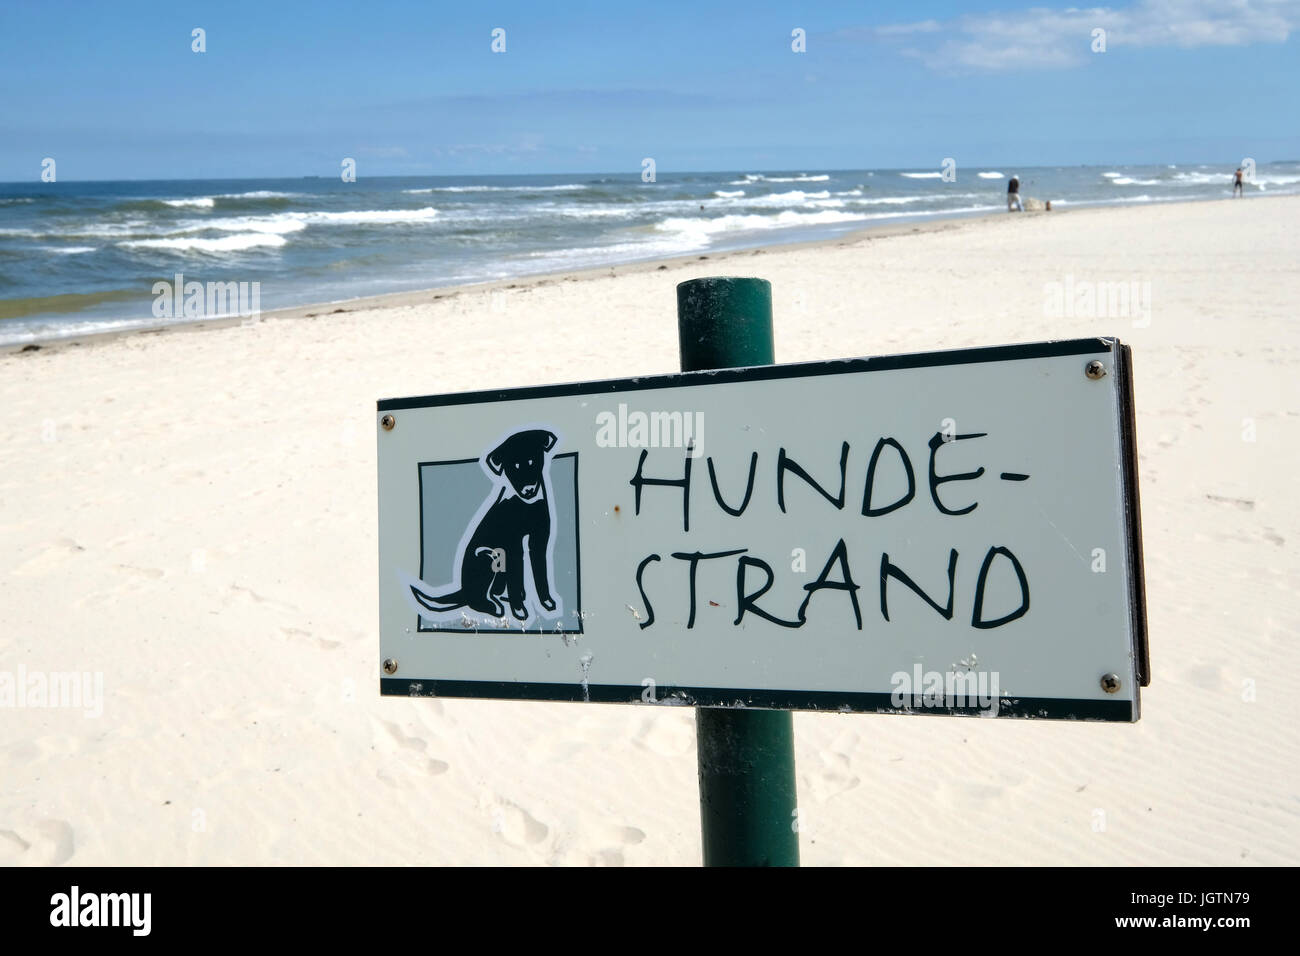 Schild steht "Hunde-Strand" (Hunde-Strand), Haustiere erlaubt Strand auf der Insel Spiekeroog, Deutschland Stockfoto